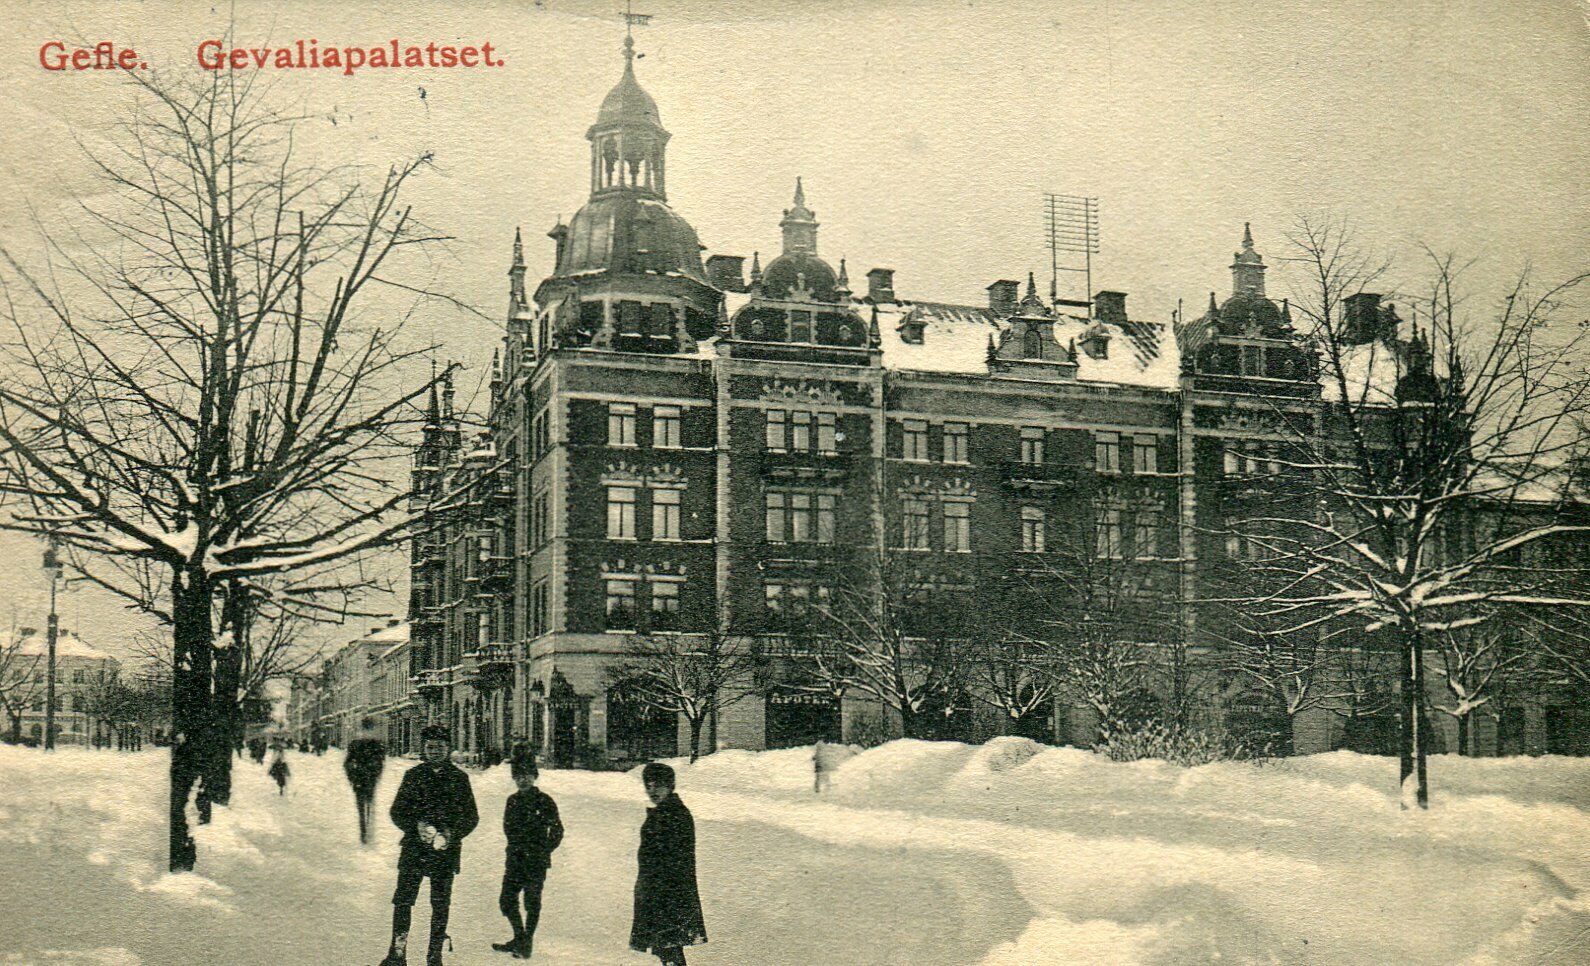 Sweden Gefle - Gevaliapalatset 1914 cover on postcard